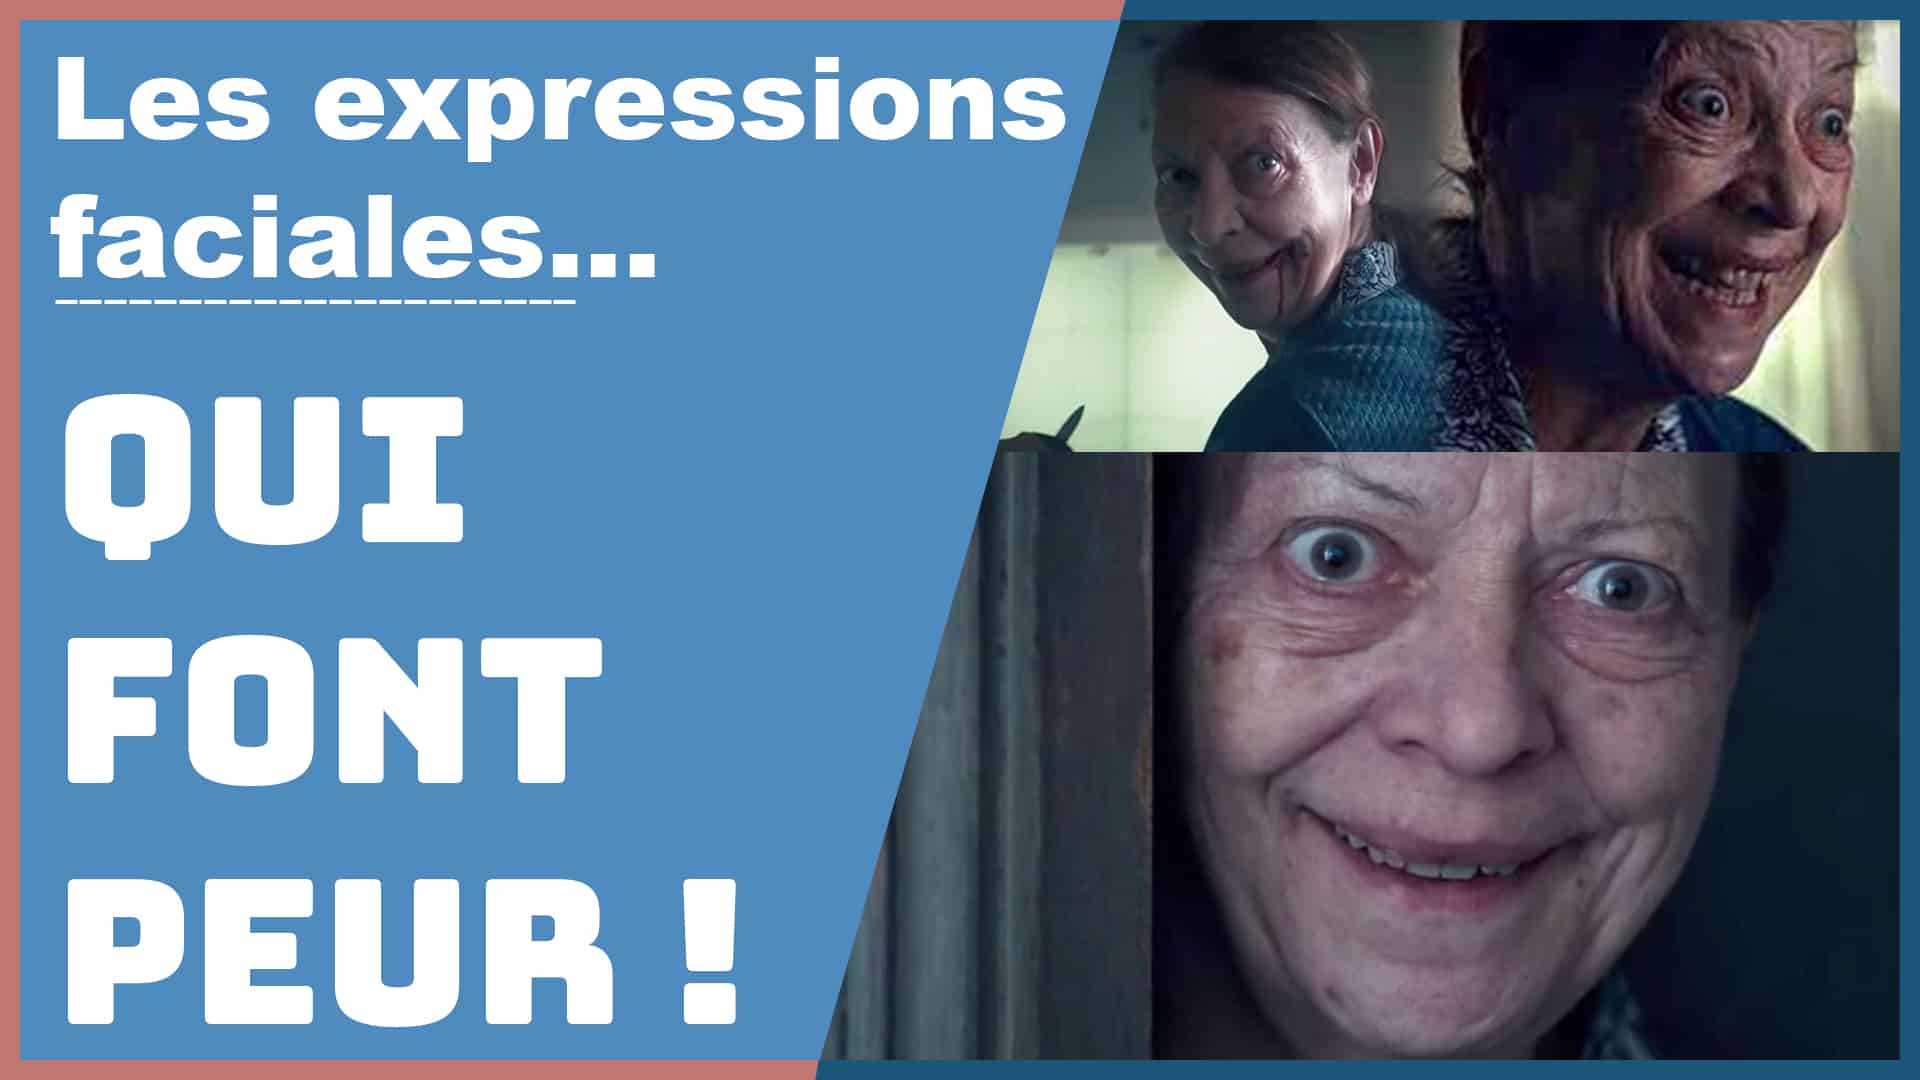 Les expressions faciales qui font peur décryptage de la série Marianne - Non verbal - Dominique Molle - Facing Morphopsychologie